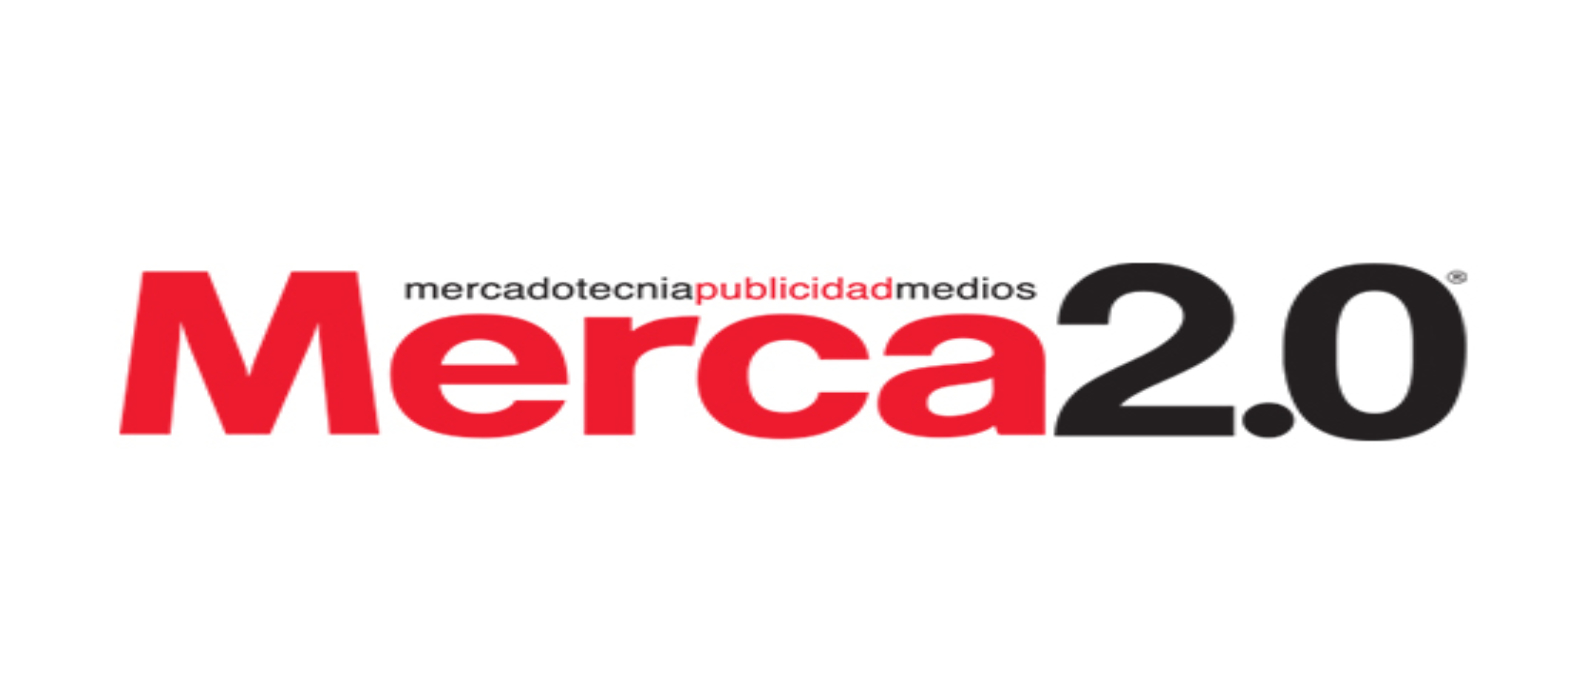 Parnaso Comunicación en la revista mexicana Merca2.0 - Parnaso